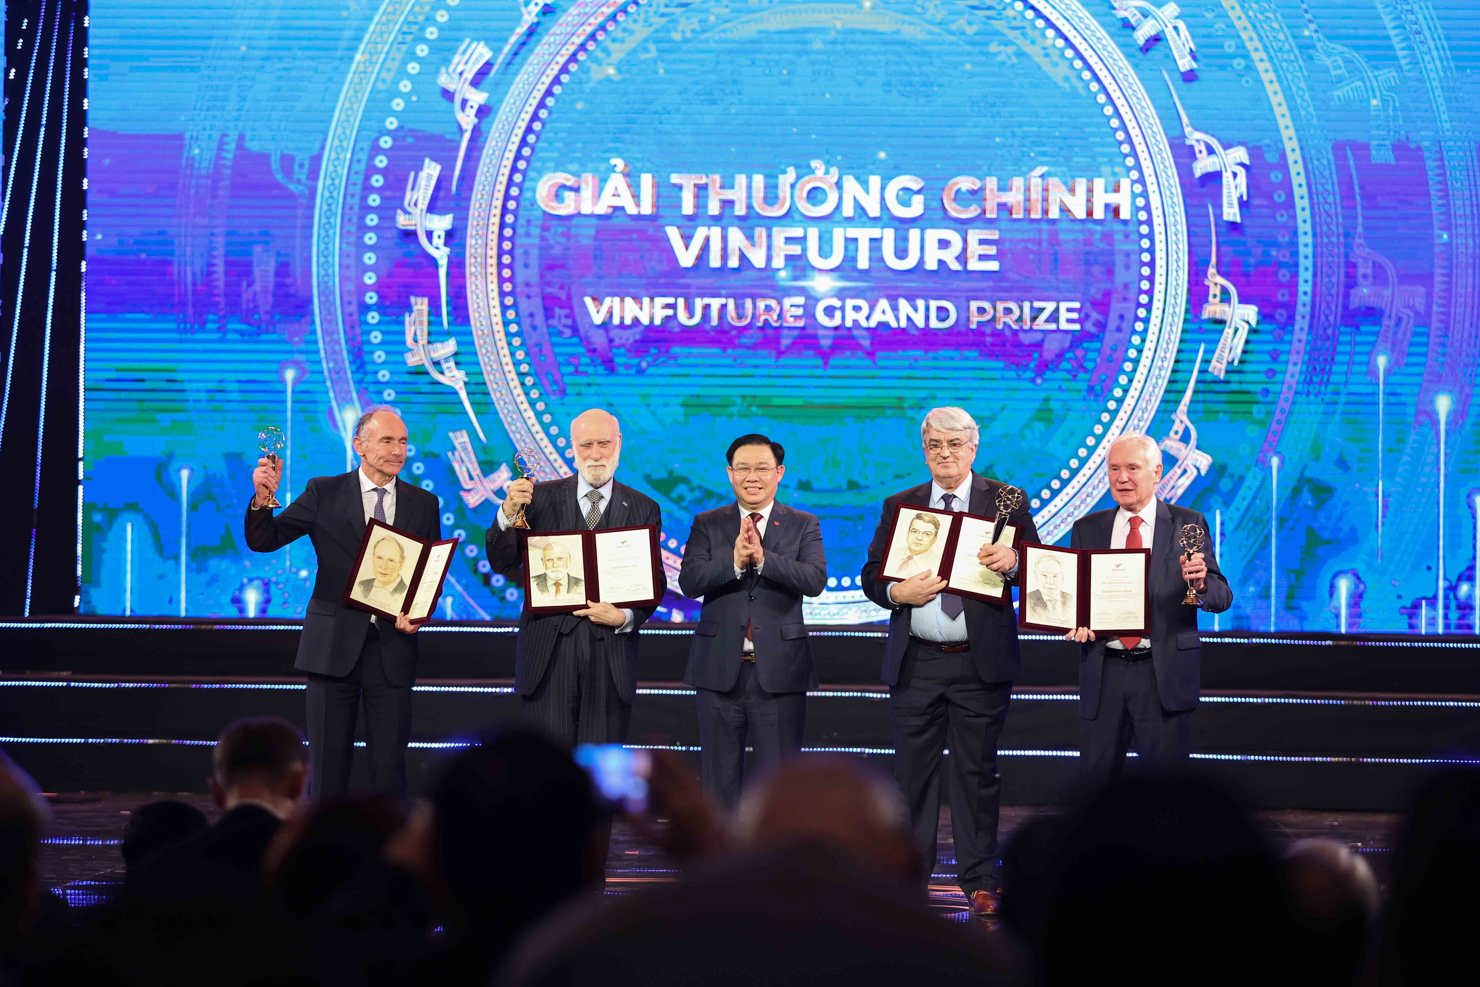 Chủ tịch Quốc hội Vương Đình Huệ trao Giải thưởng Chính VinFuture 2022 trị giá 3 triệu đô la Mỹ cho 5 nhà khoa học. Ảnh: VIC